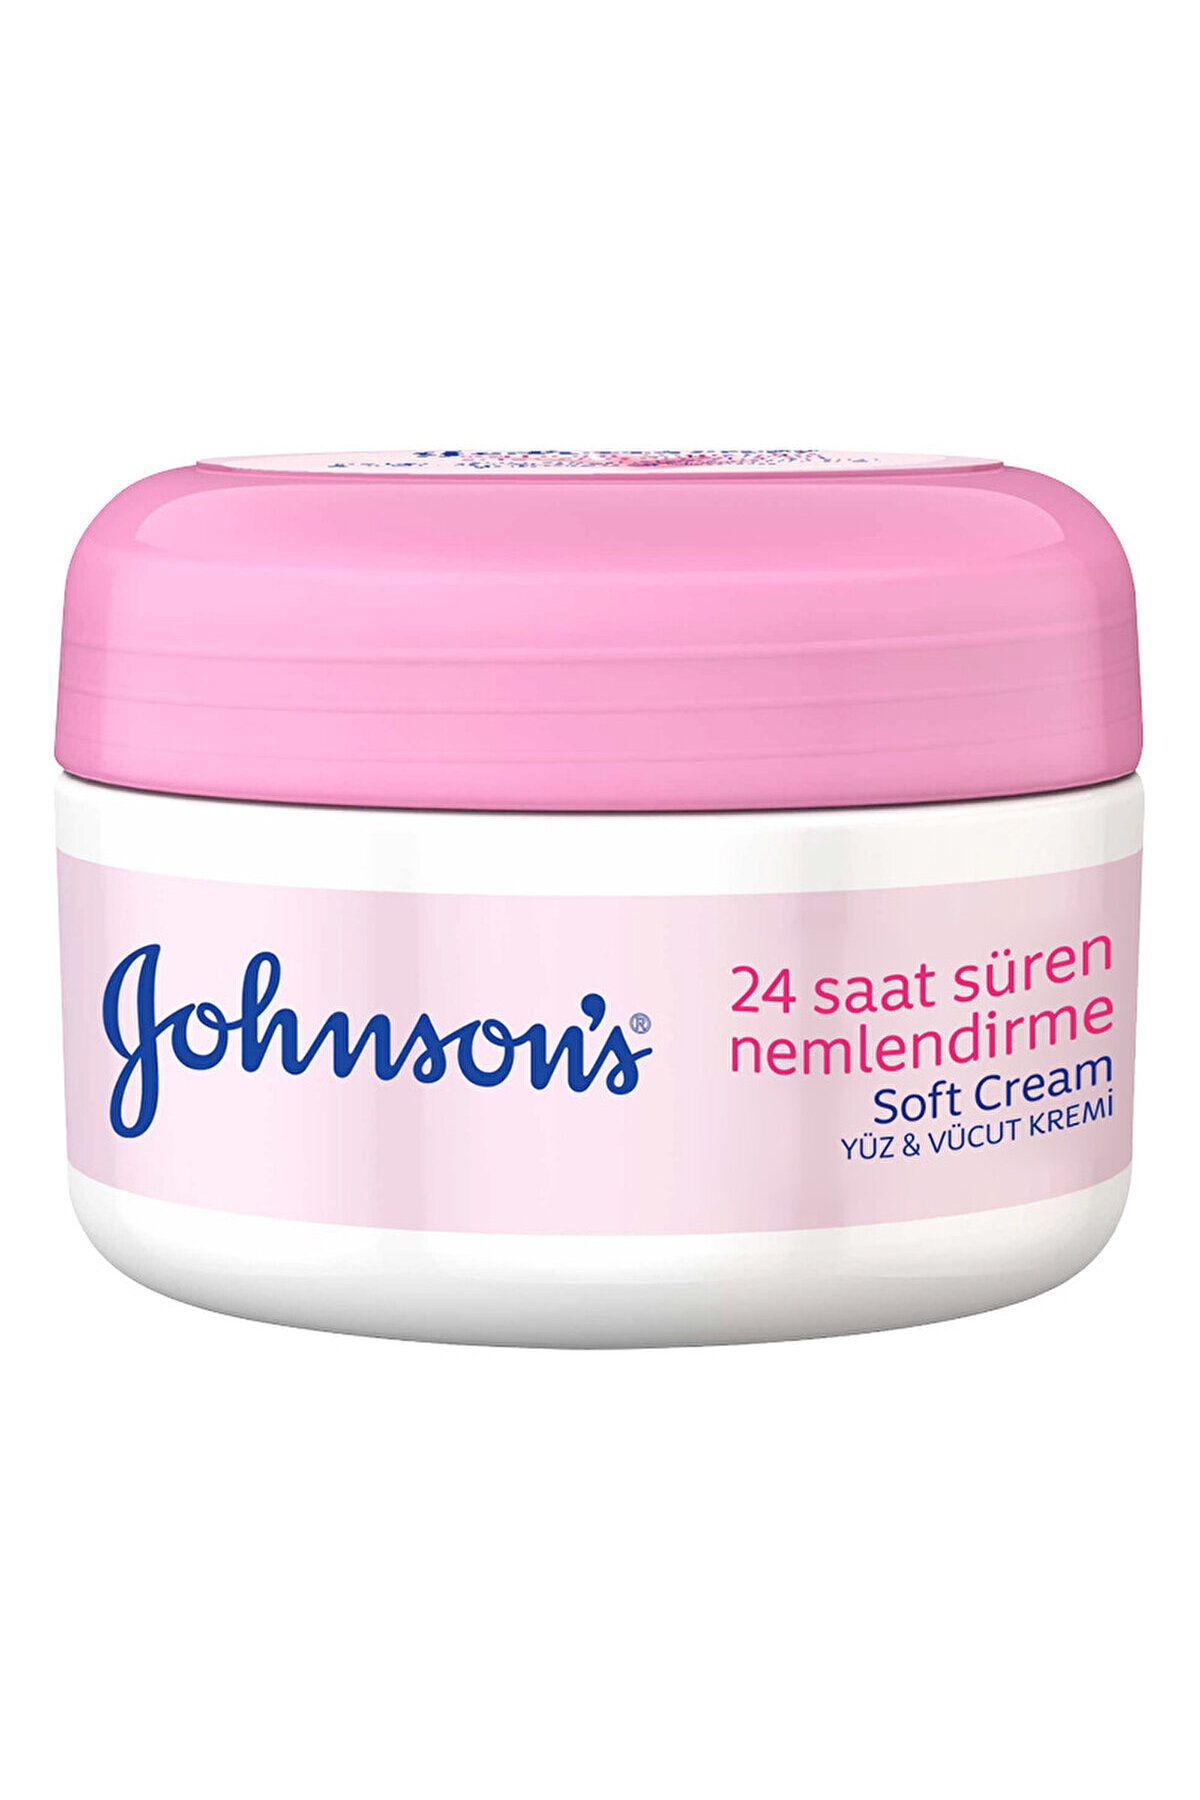 Johnson's Johnson’s 24 saat Nemlendirici Soft Cream Yüz & Vücut Kremi 200 ml